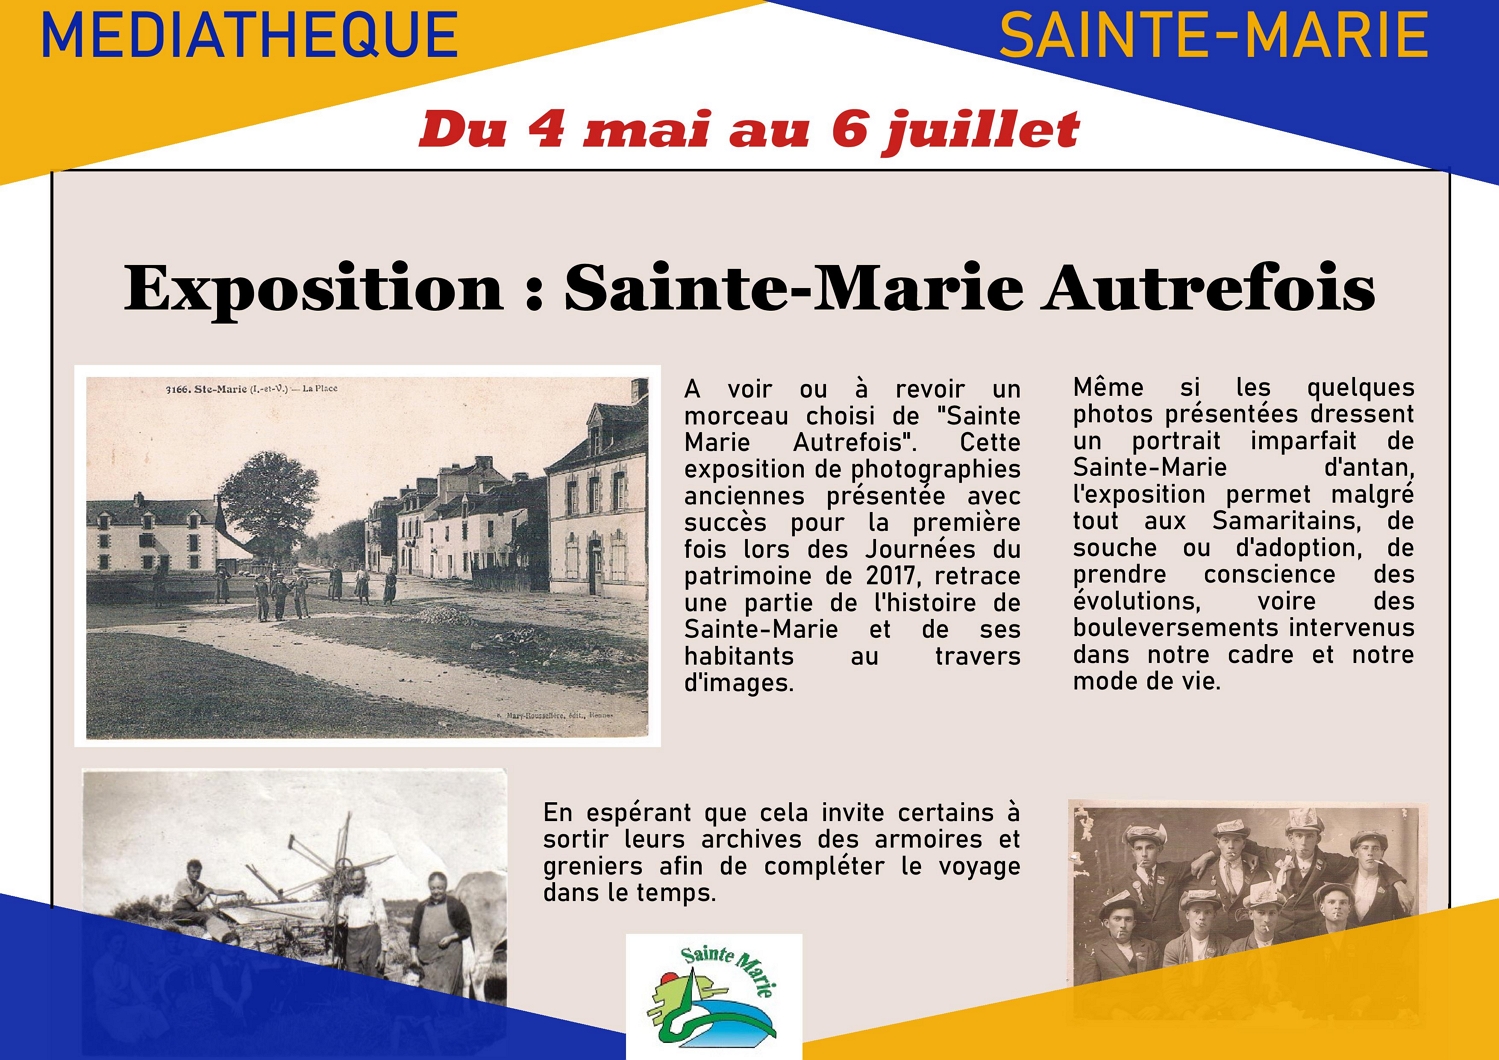 Sainte-Marie Autrefois